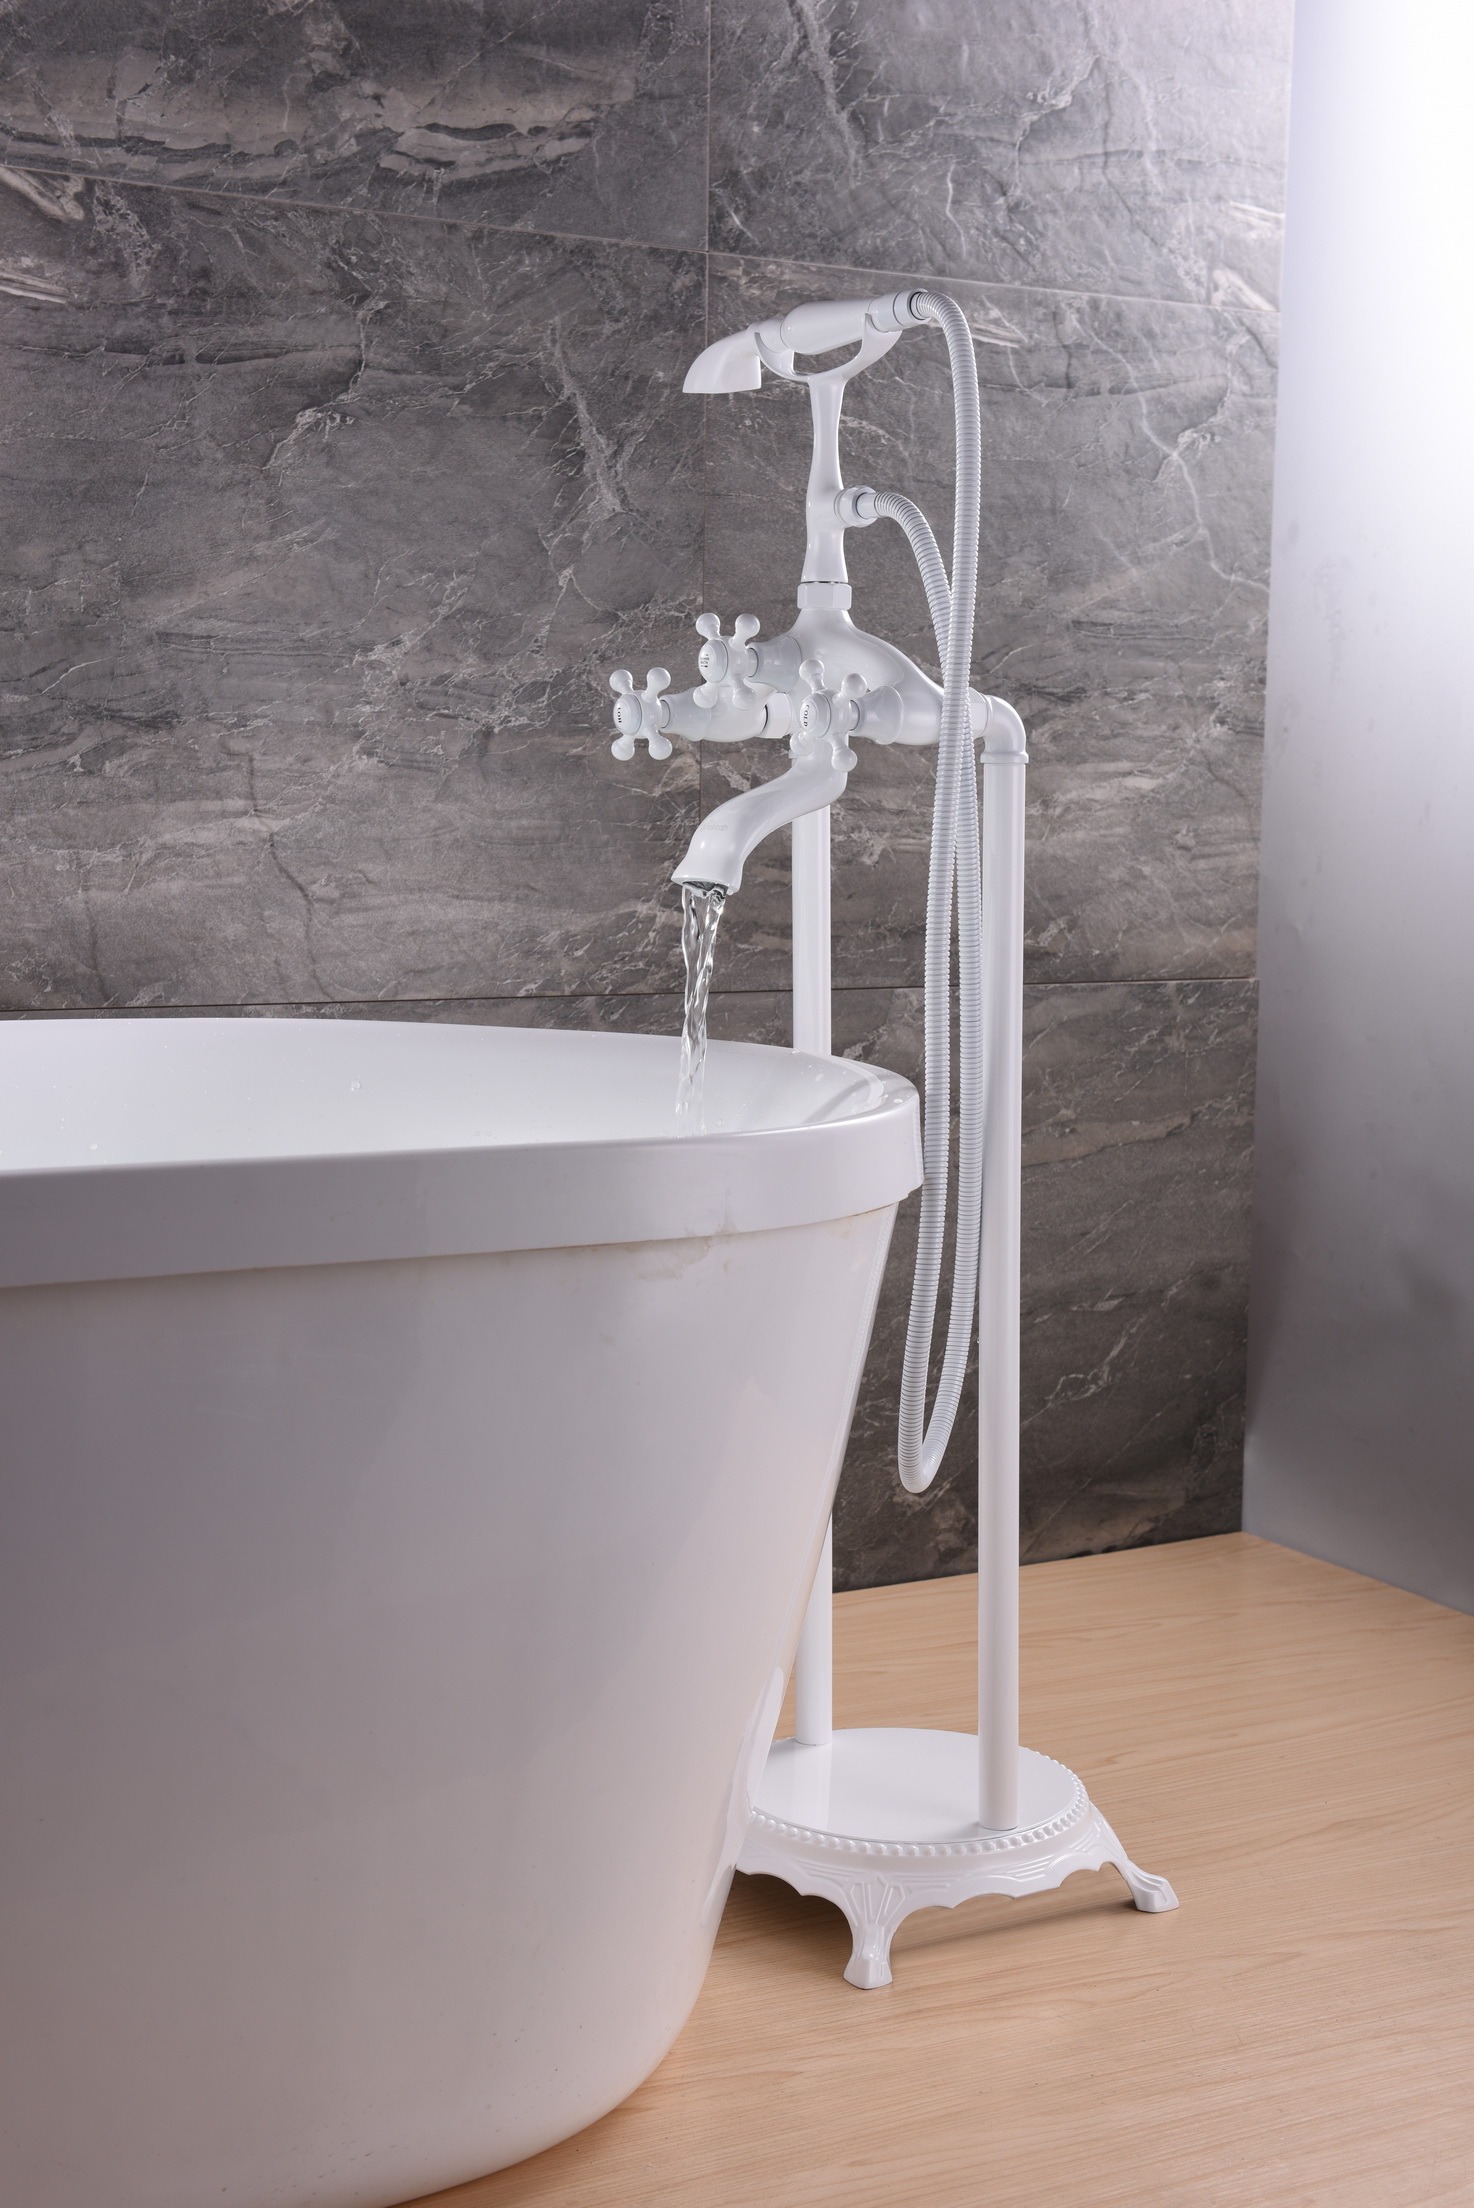 Unique Design Deck-Mount Bathtub Faucet Thermostatic Bathroom Faucet